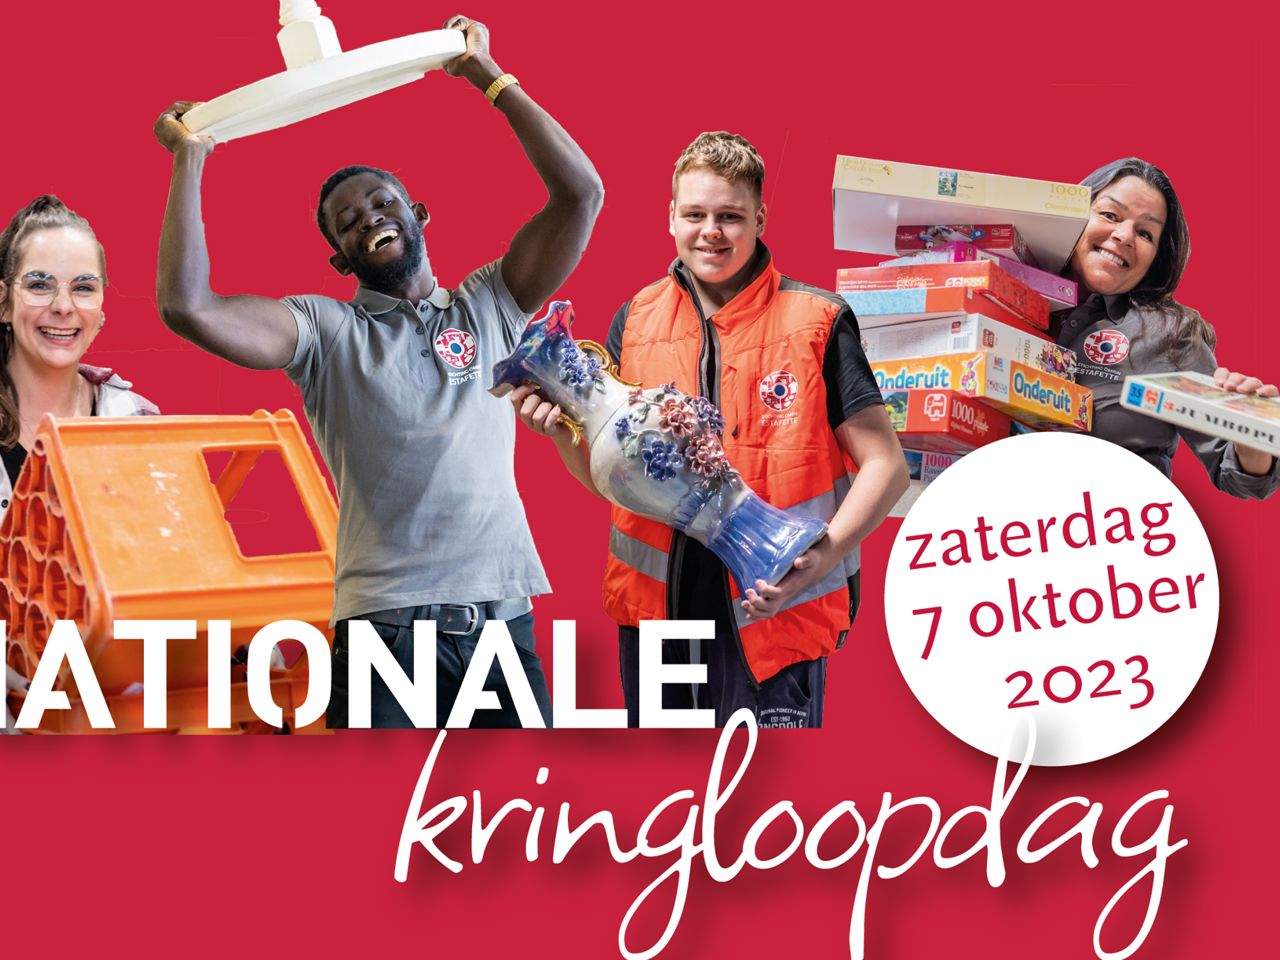 Headerfoto Nationale Kringloopdag 2023 (1)